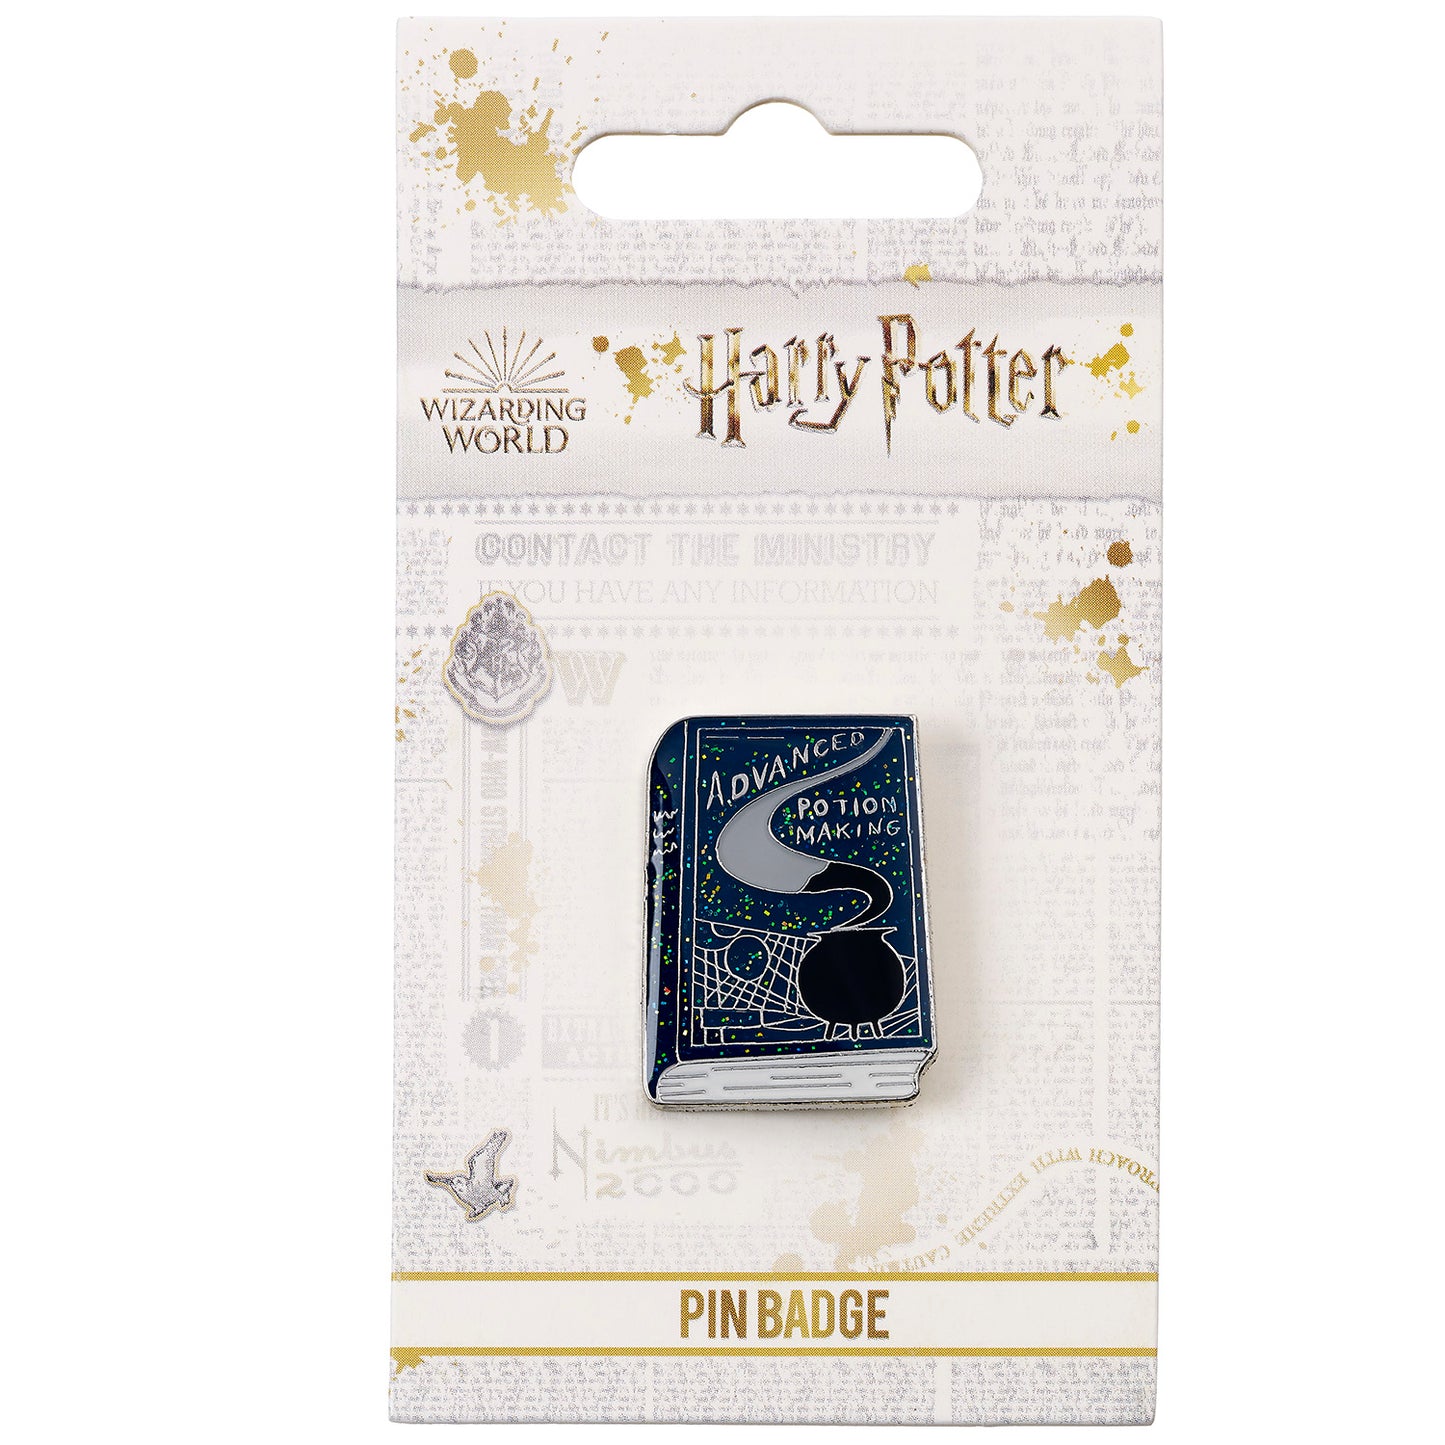 Insigne d'épingle de livre de fabrication de potions avancées Harry Potter